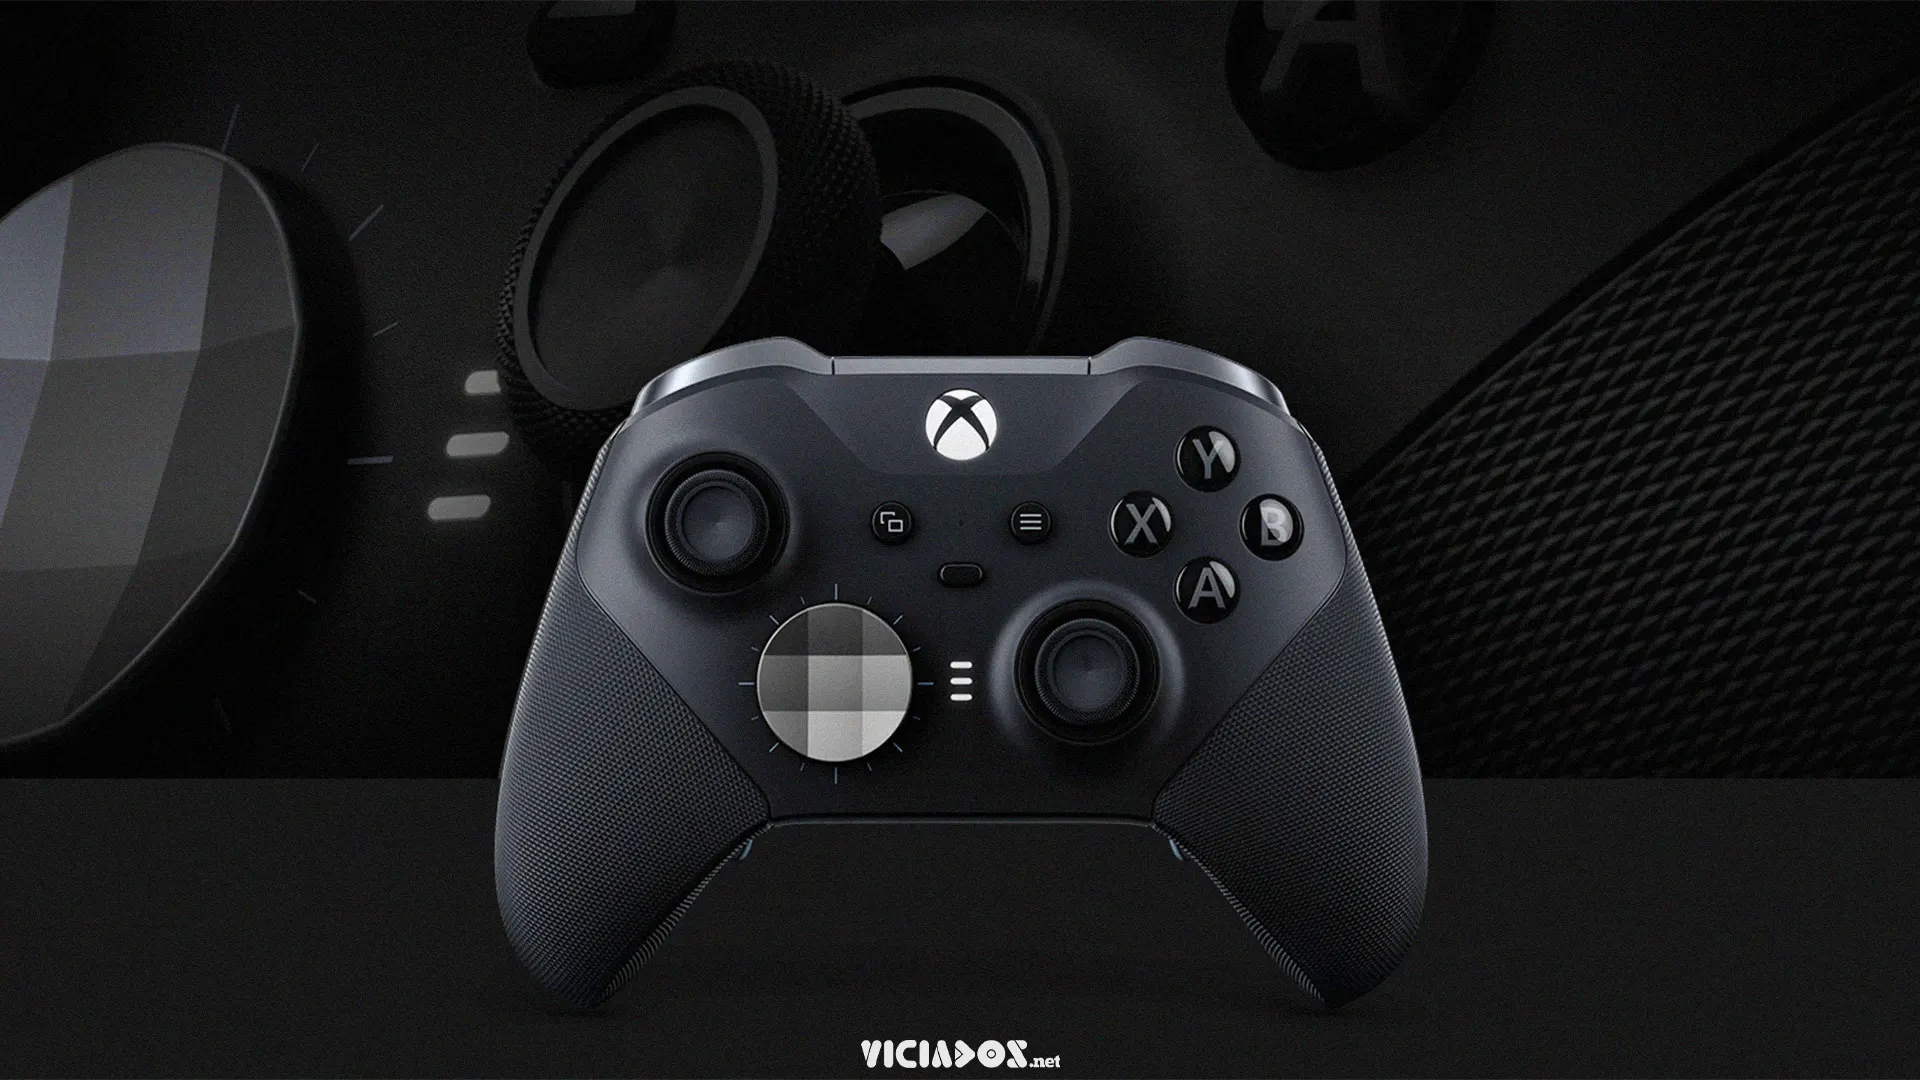 Vídeo mostra novo controle Elite para o Xbox; Confira as mudanças! 2022 Viciados